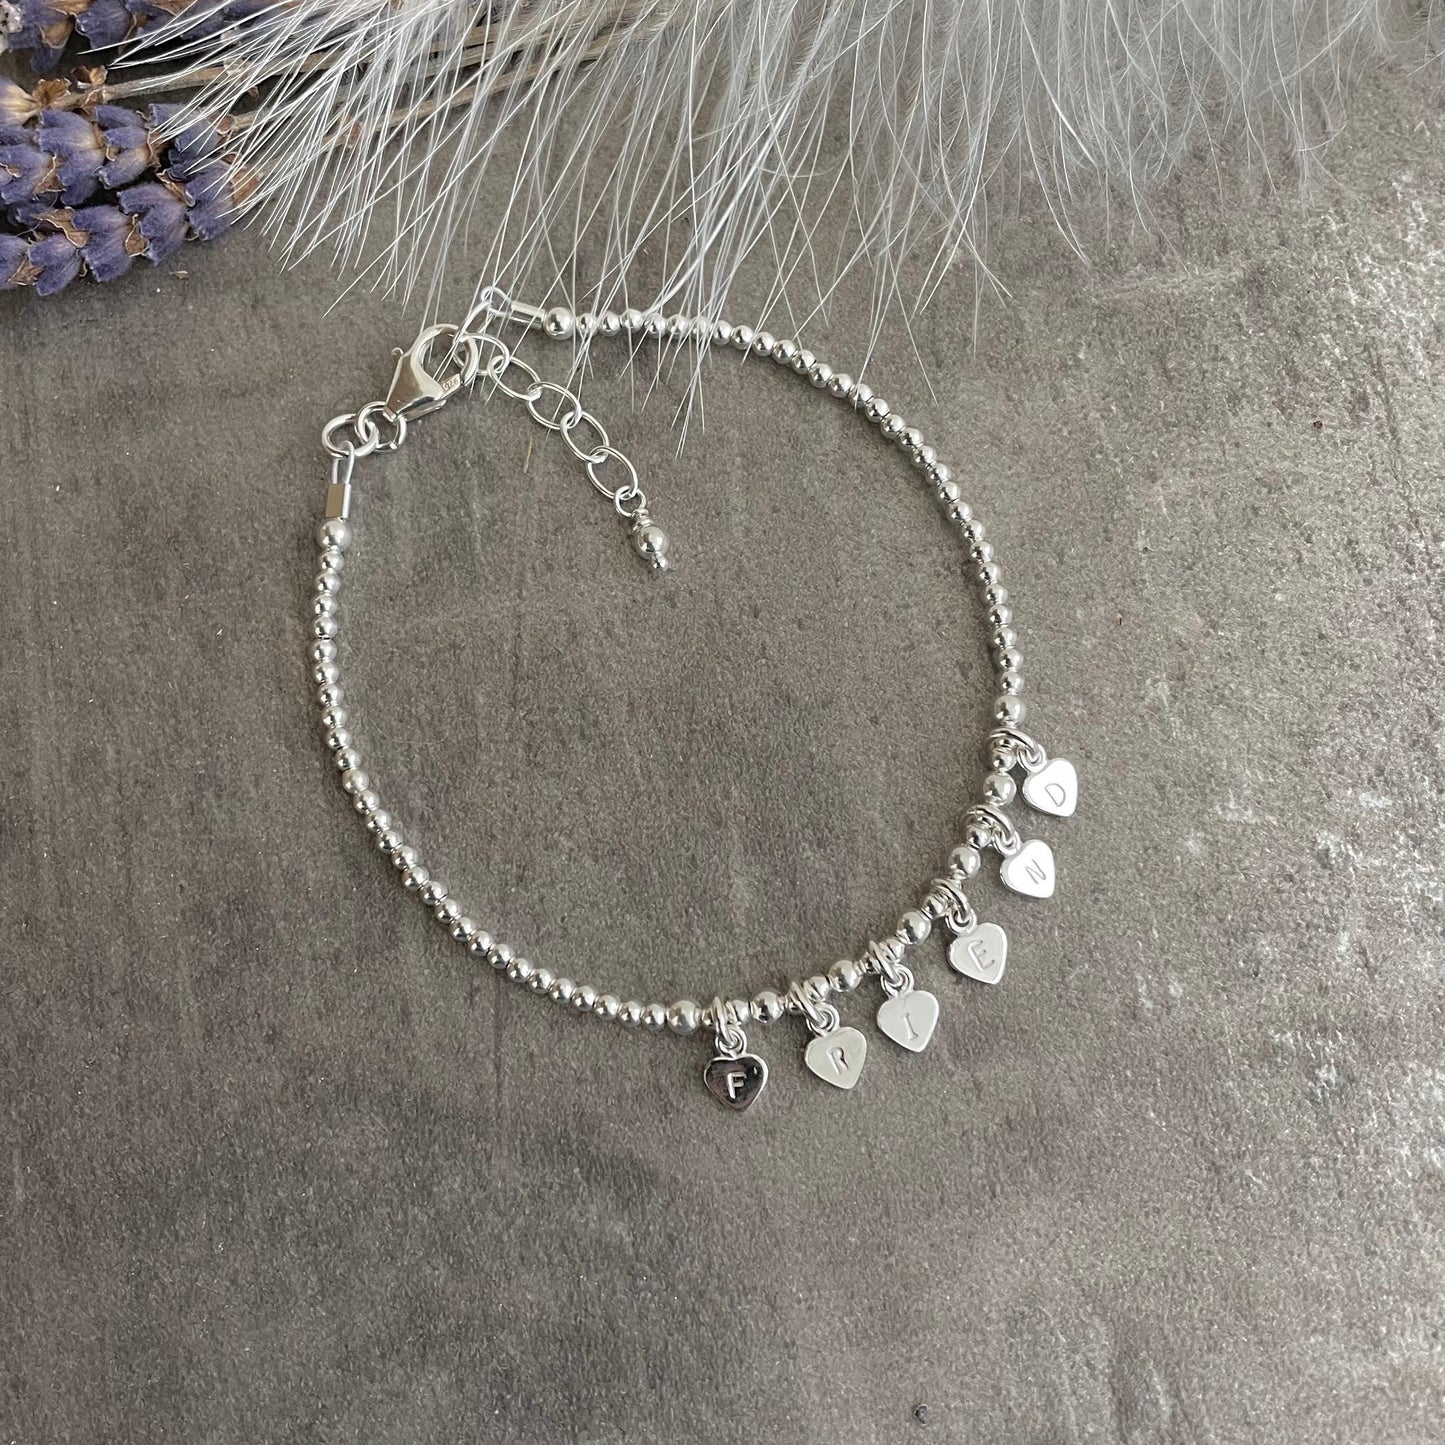 Dainty Friend Charm Bracelet, Friend Christmas Gift, Sterling Silver Jewellery for Friend